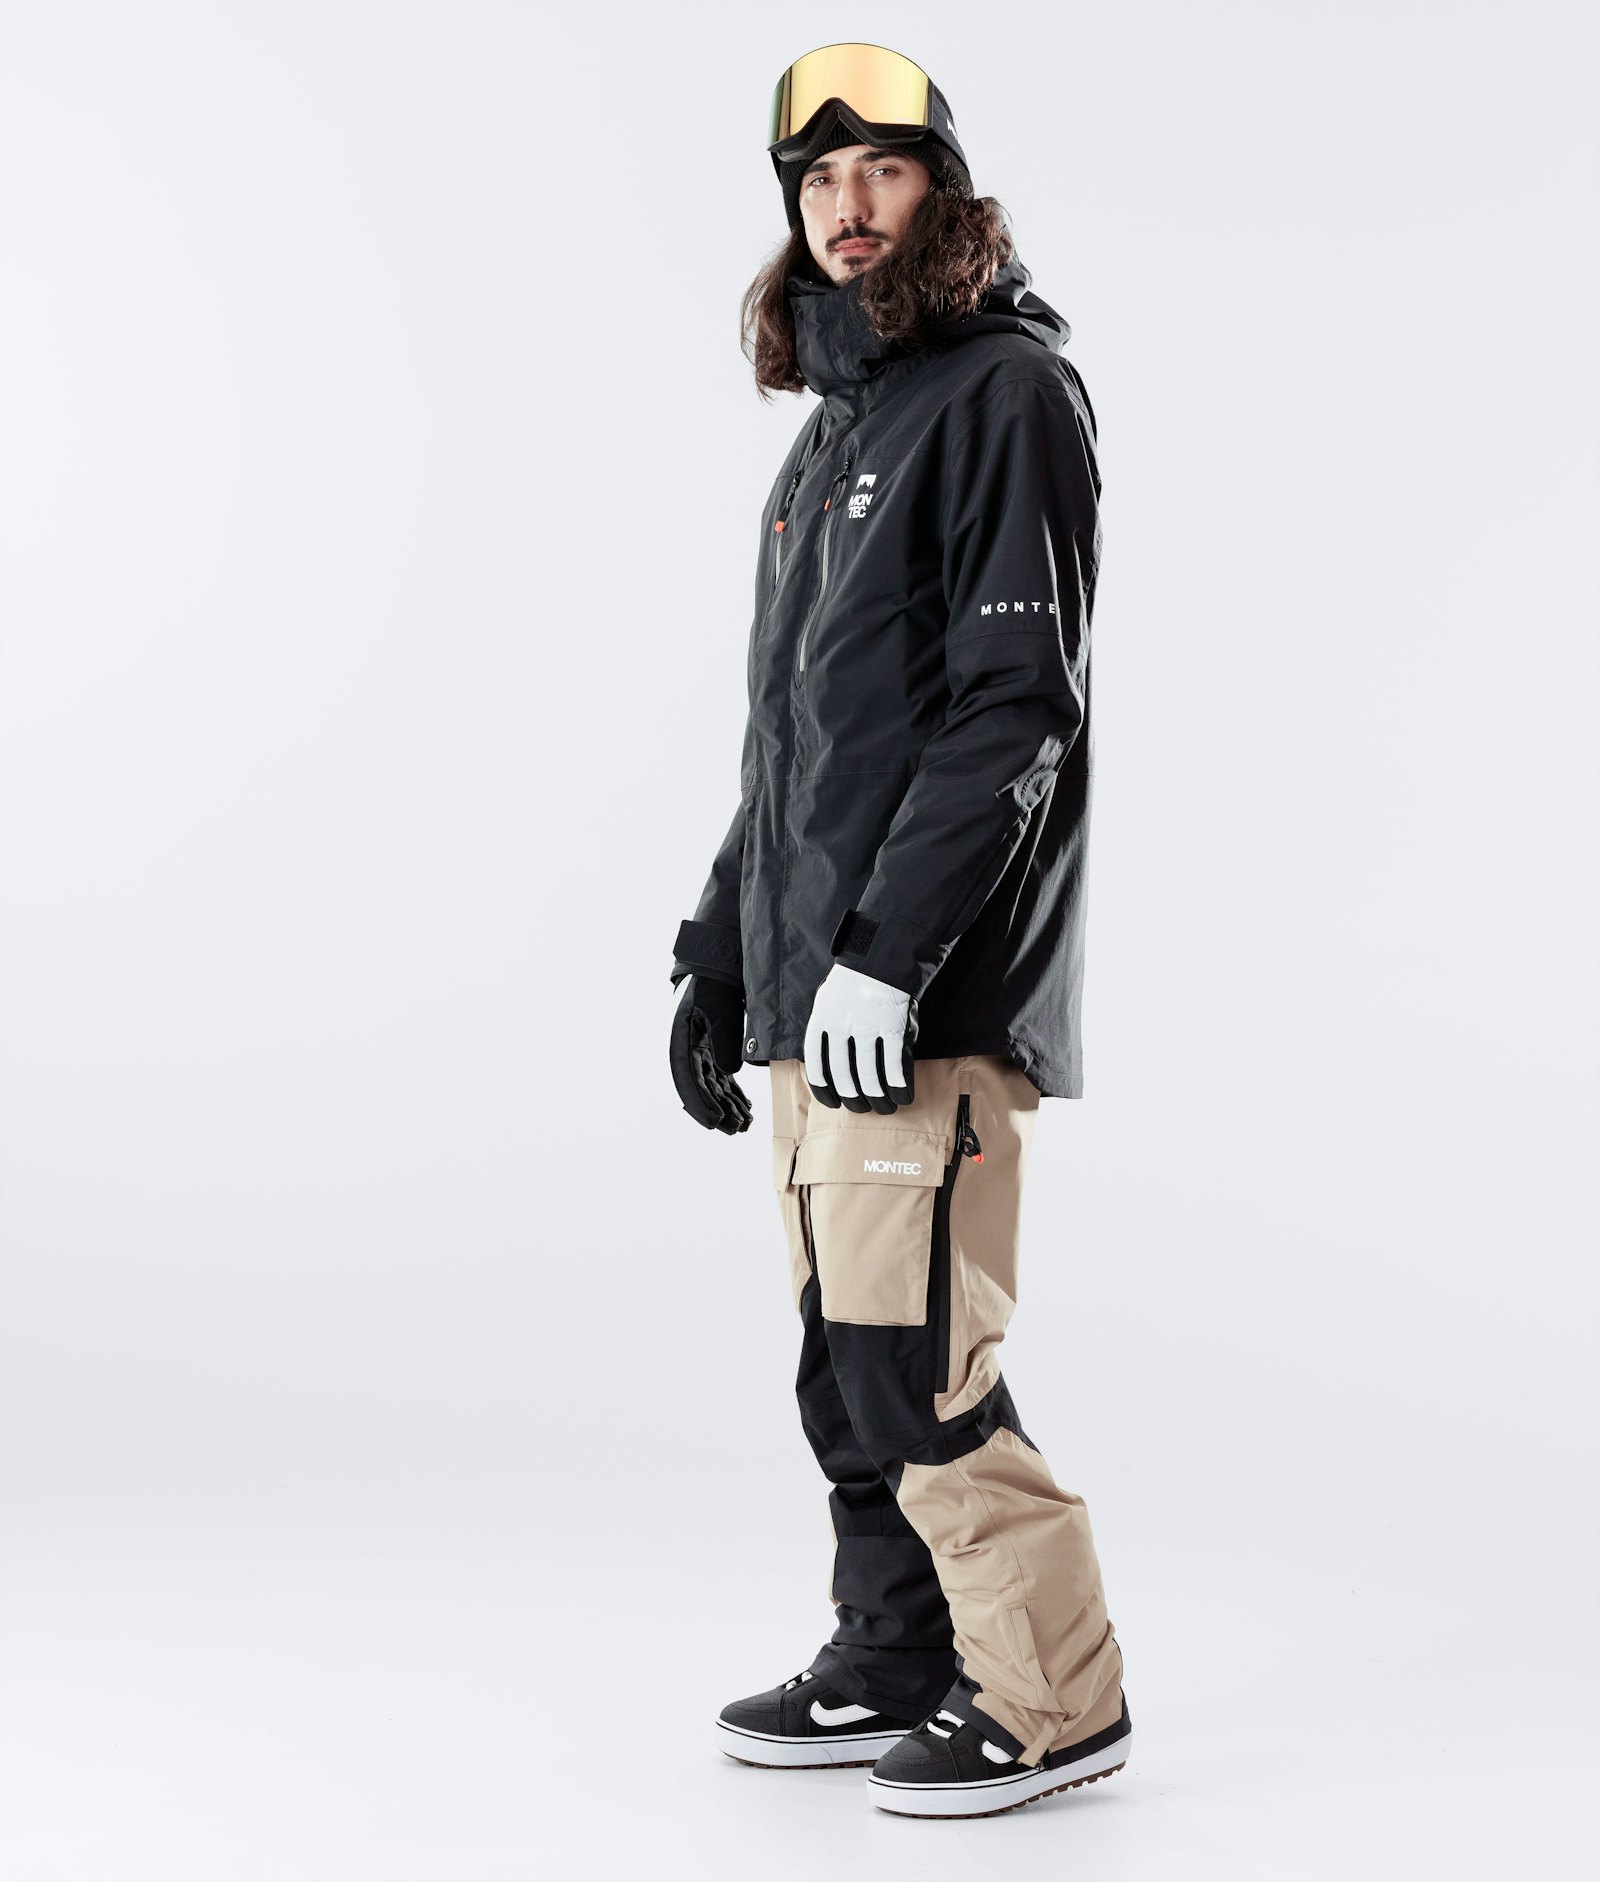 Fawk 2020 Veste Snowboard Homme Black